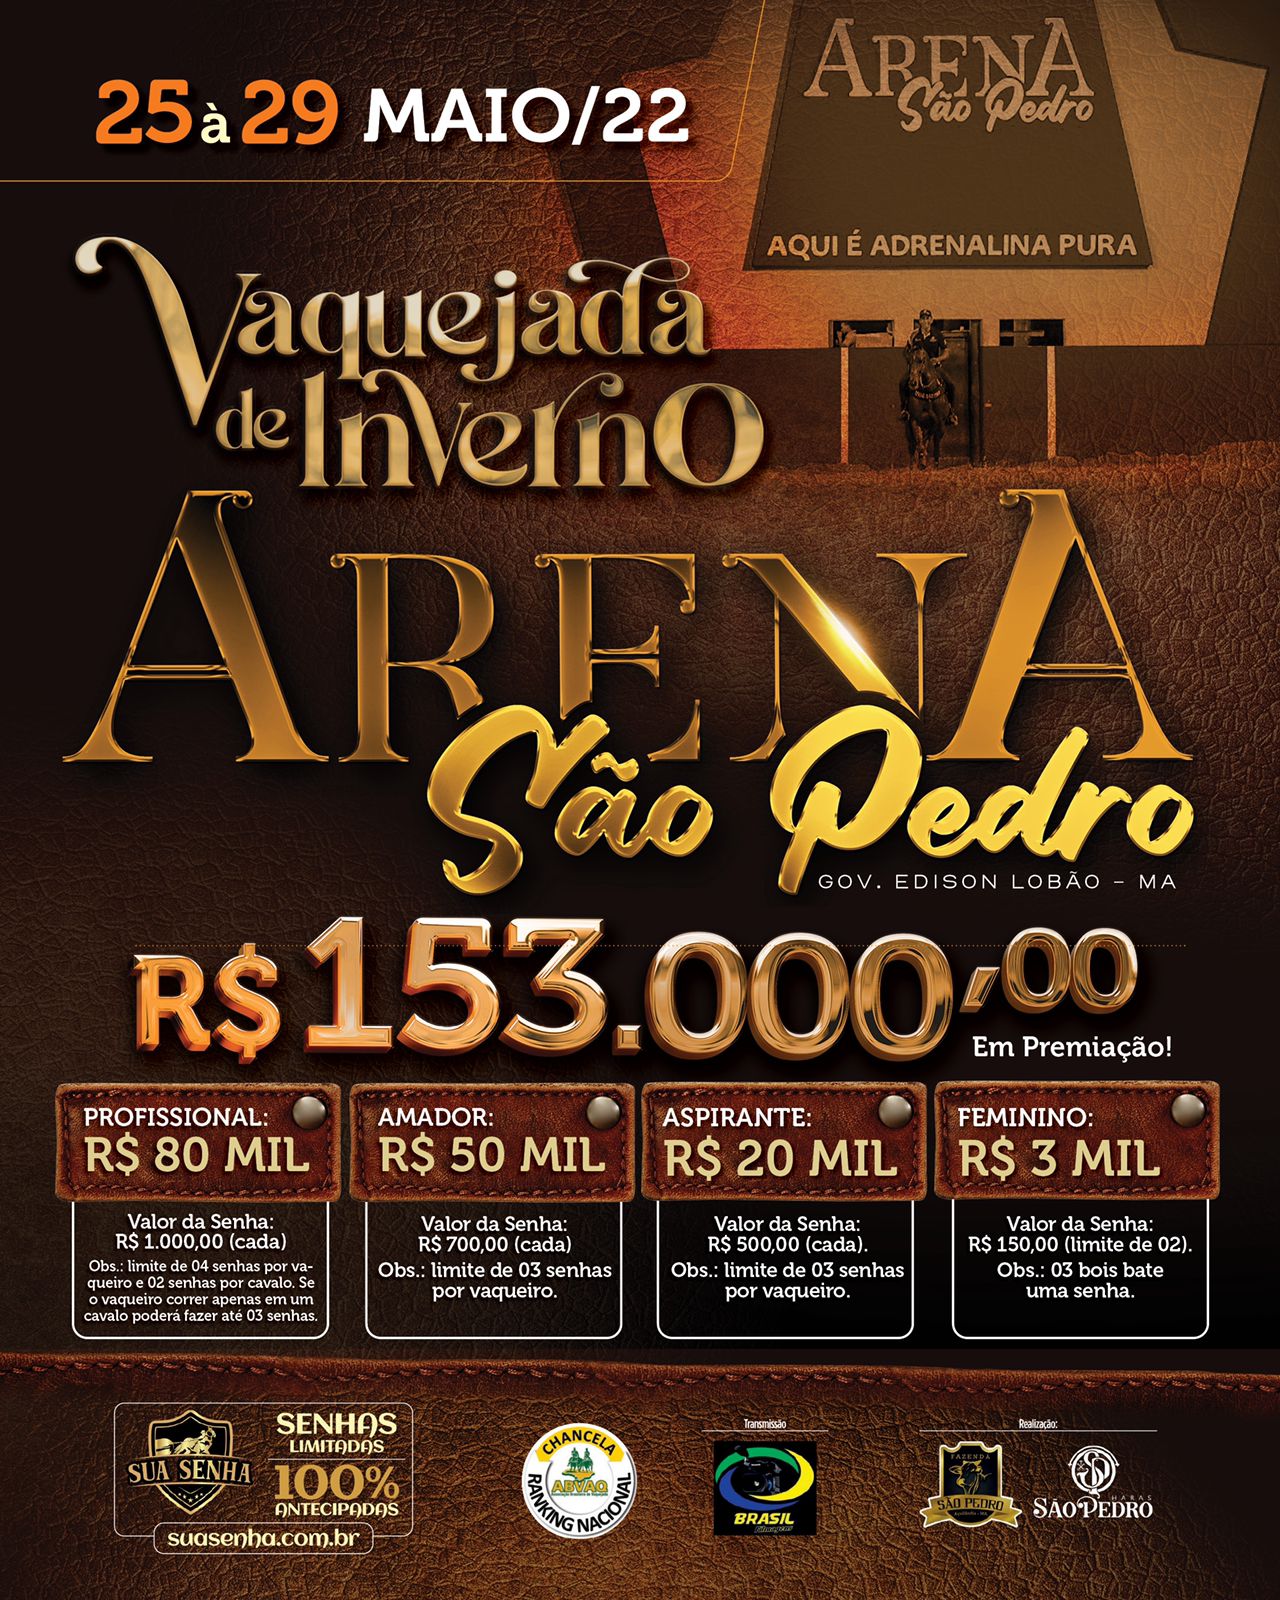 Vaquejada de Inverno - Arena São Pedro 